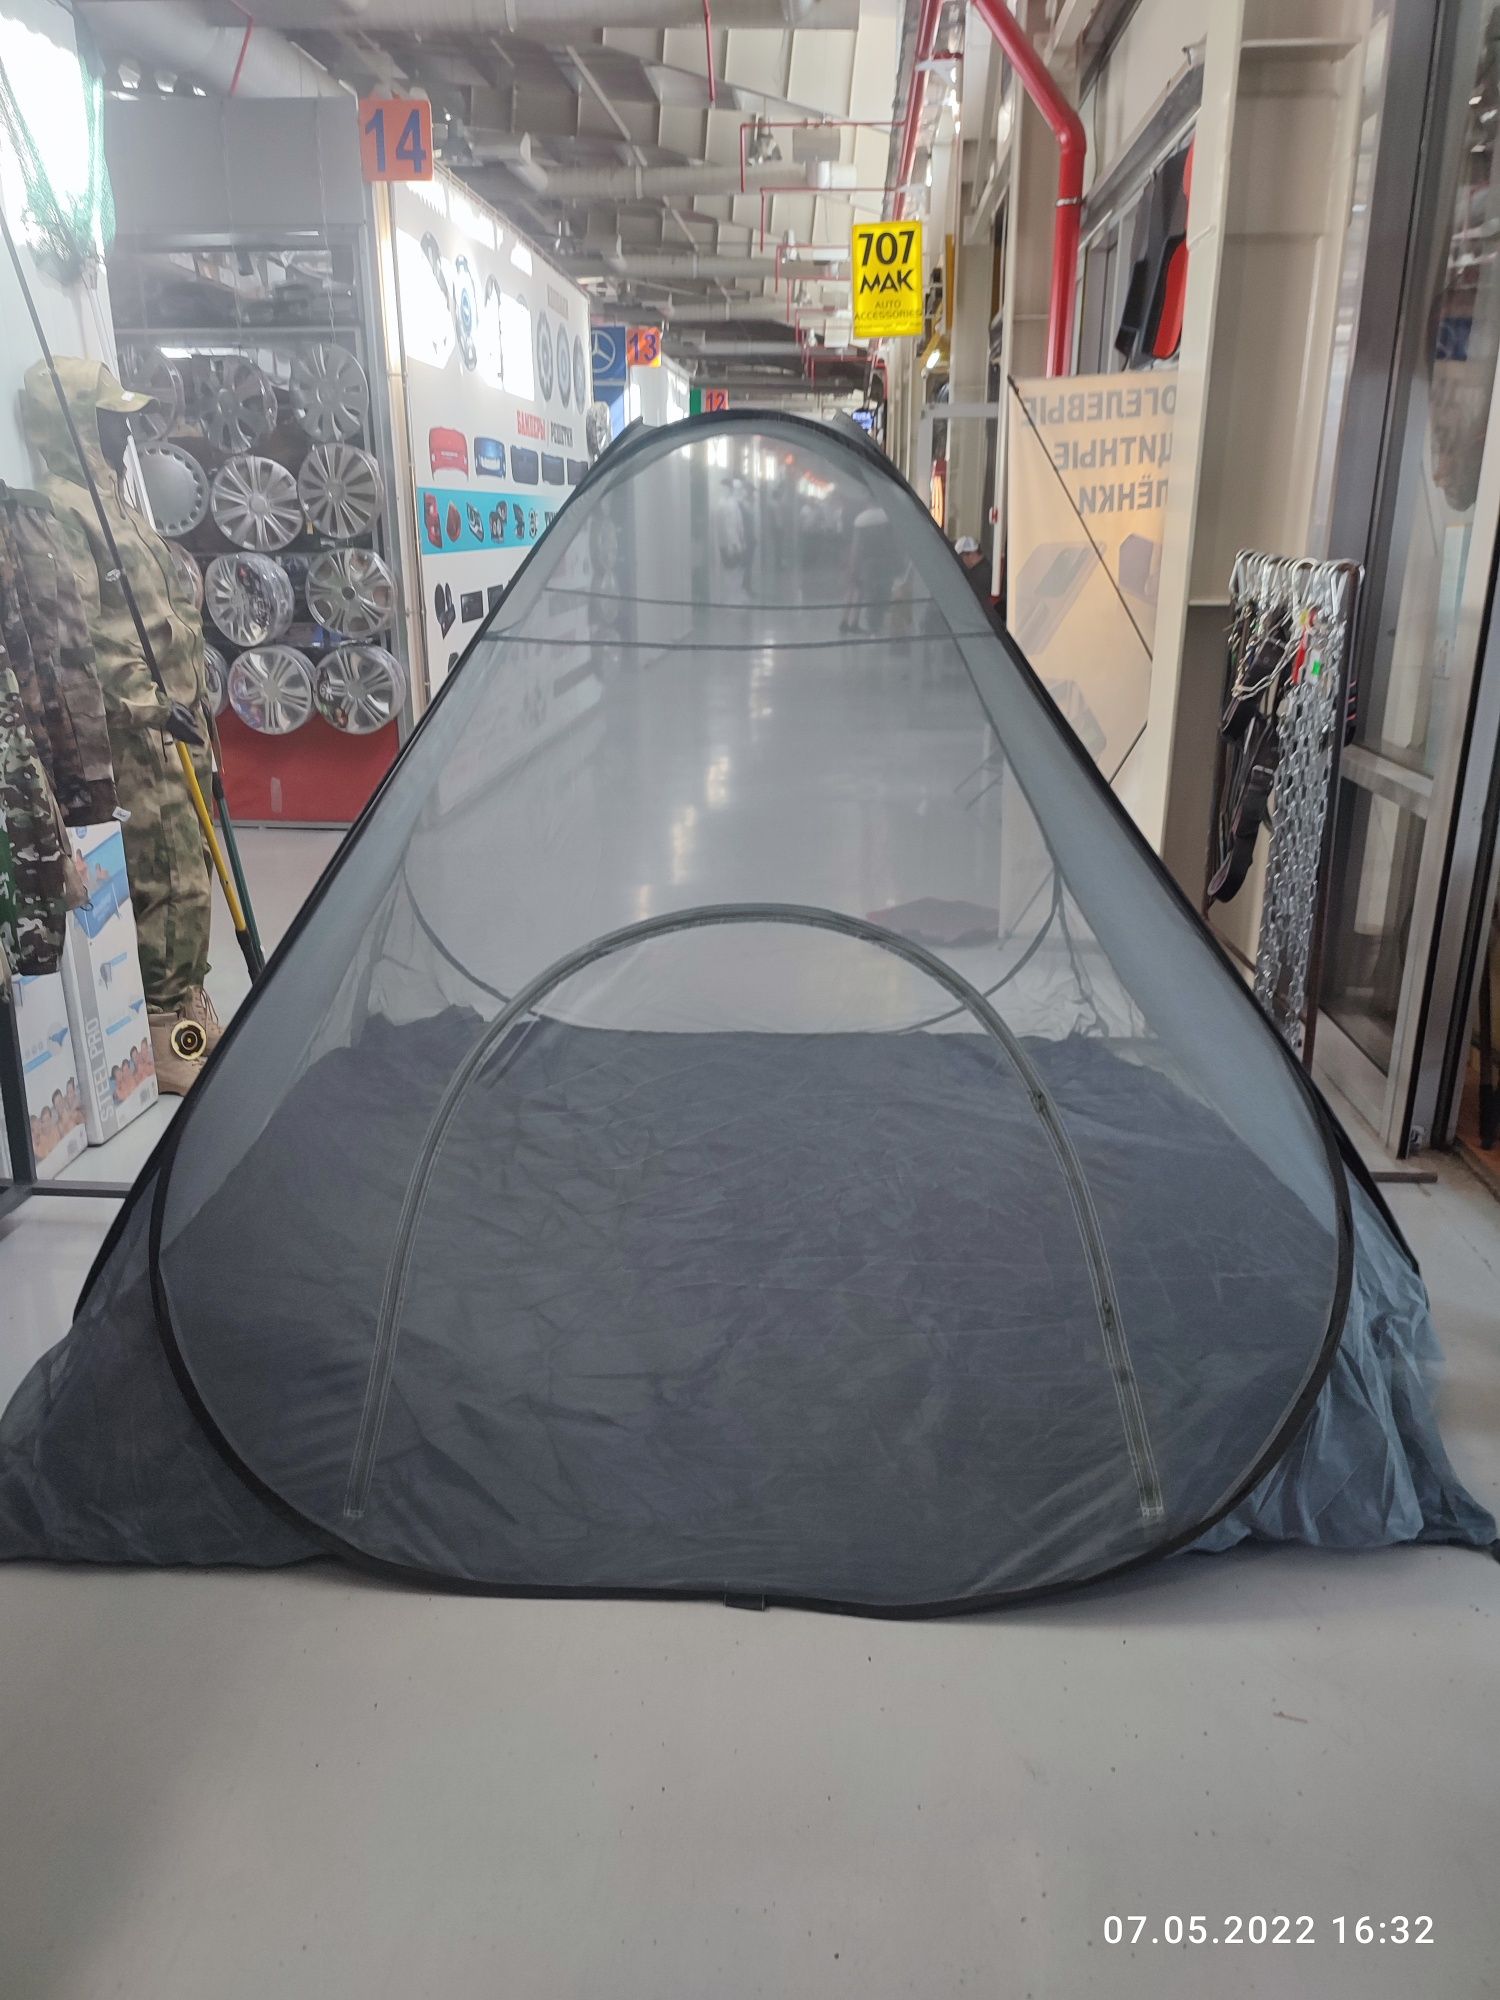 Палатка масхана большая на 5 человек, качество люкс